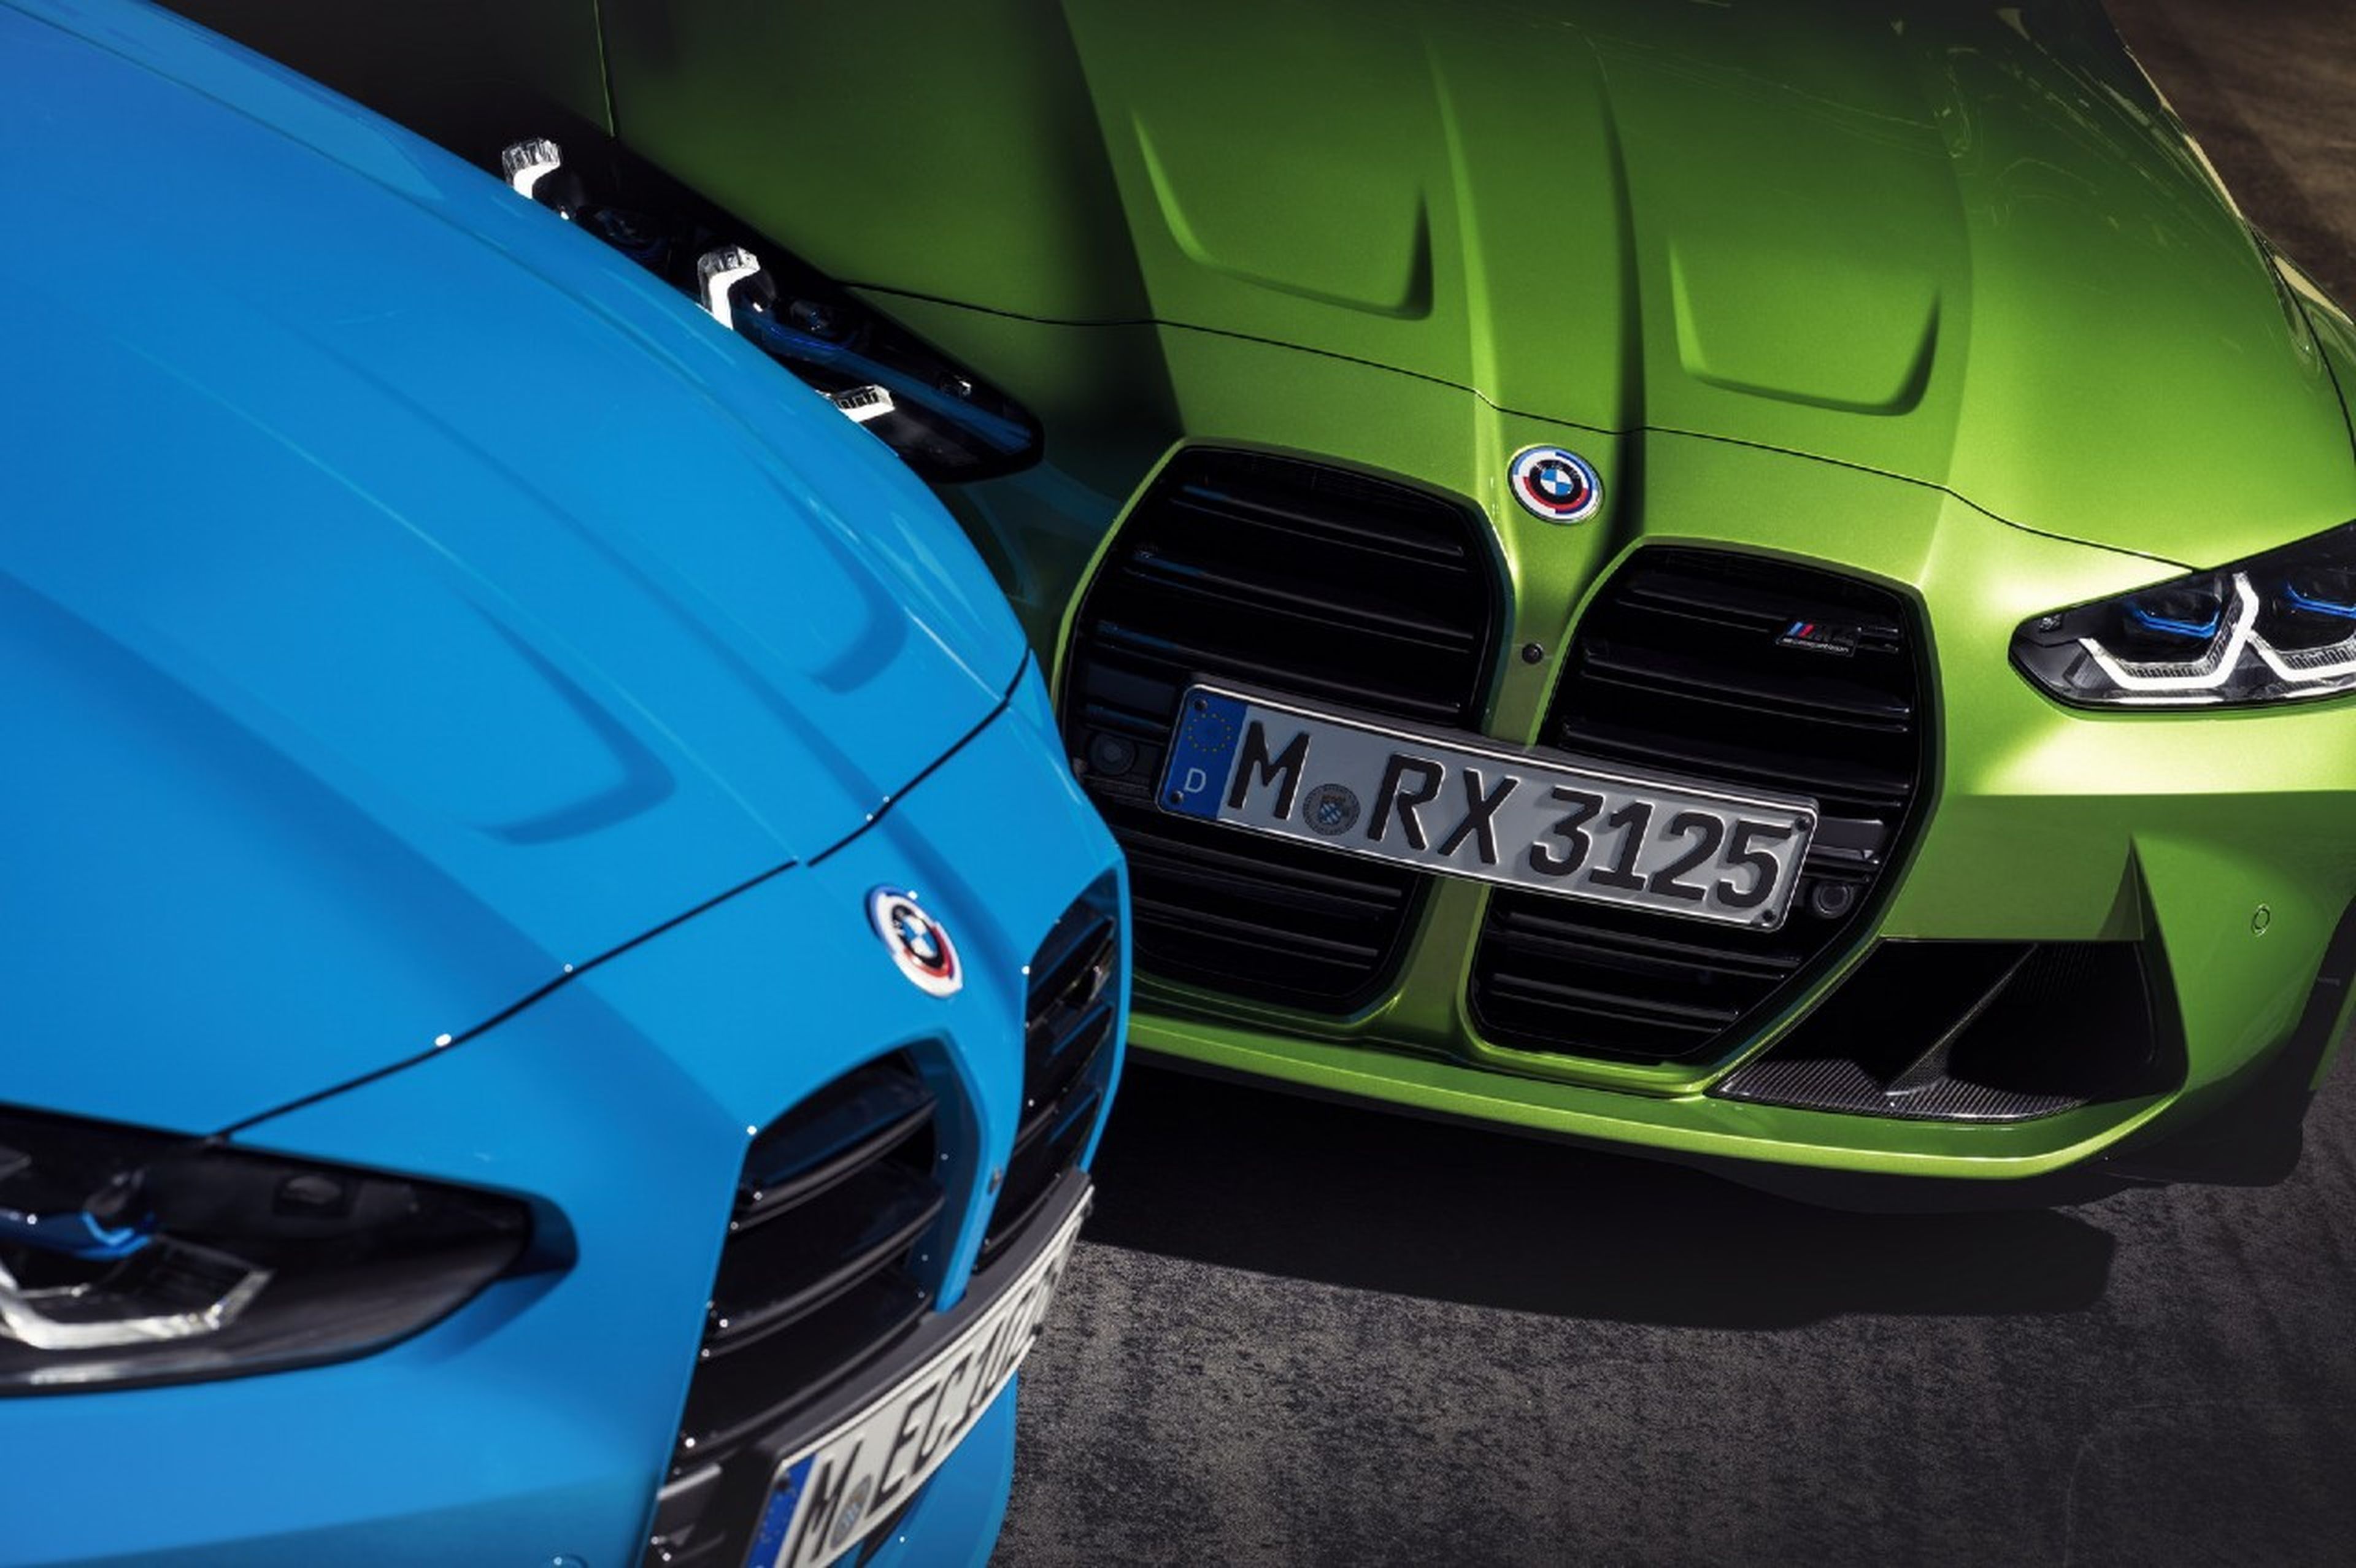 Qué significa el logotipo de BMW?